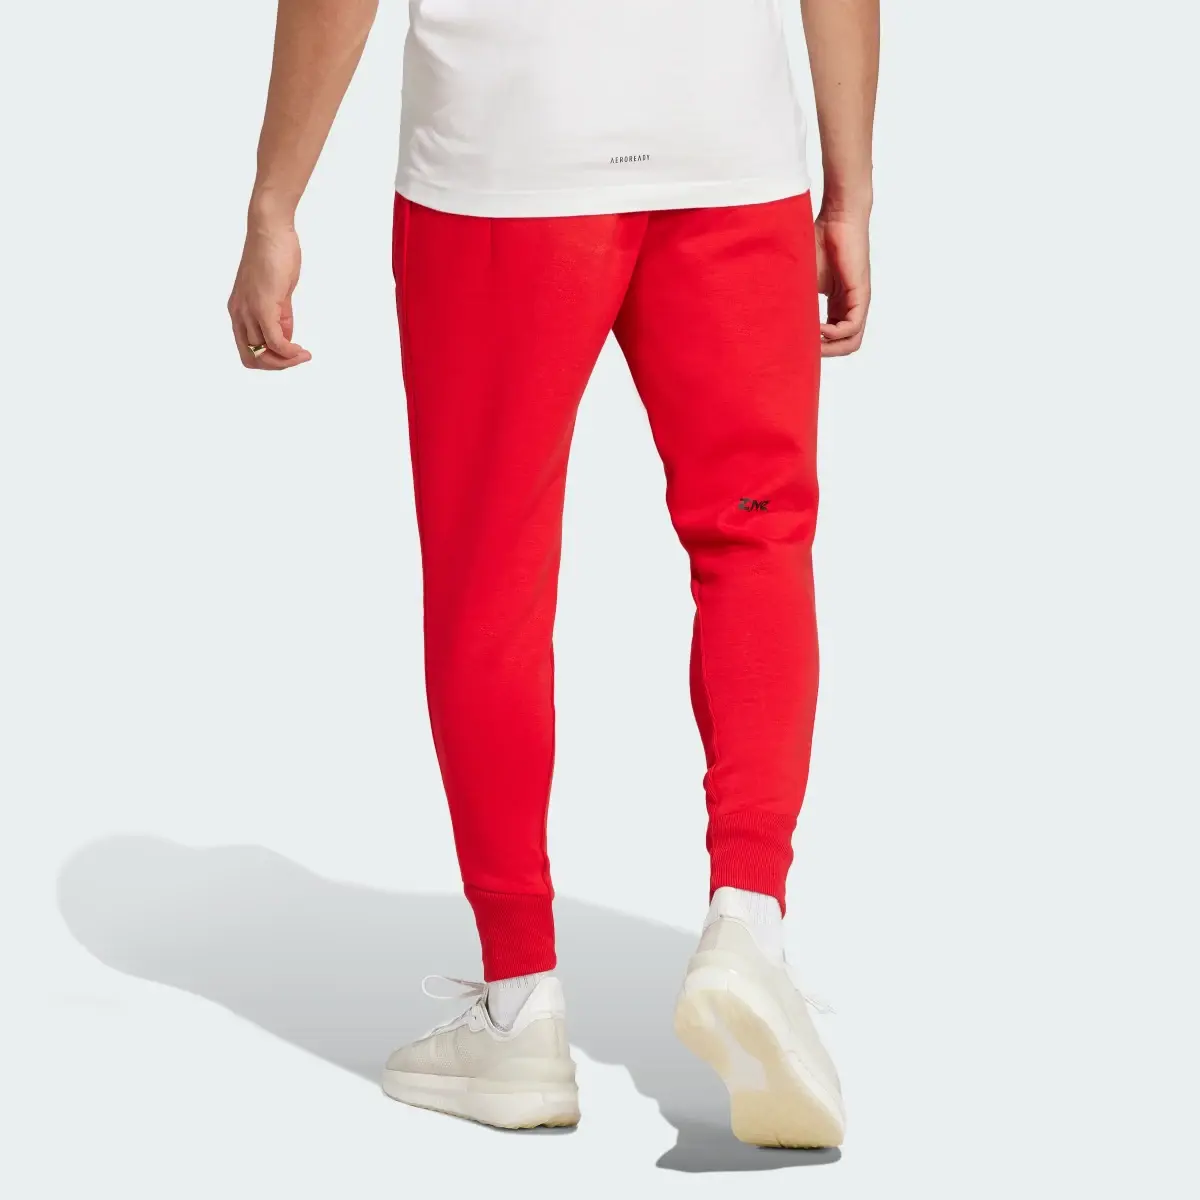 Adidas Z.N.E. Premium Pants. 2